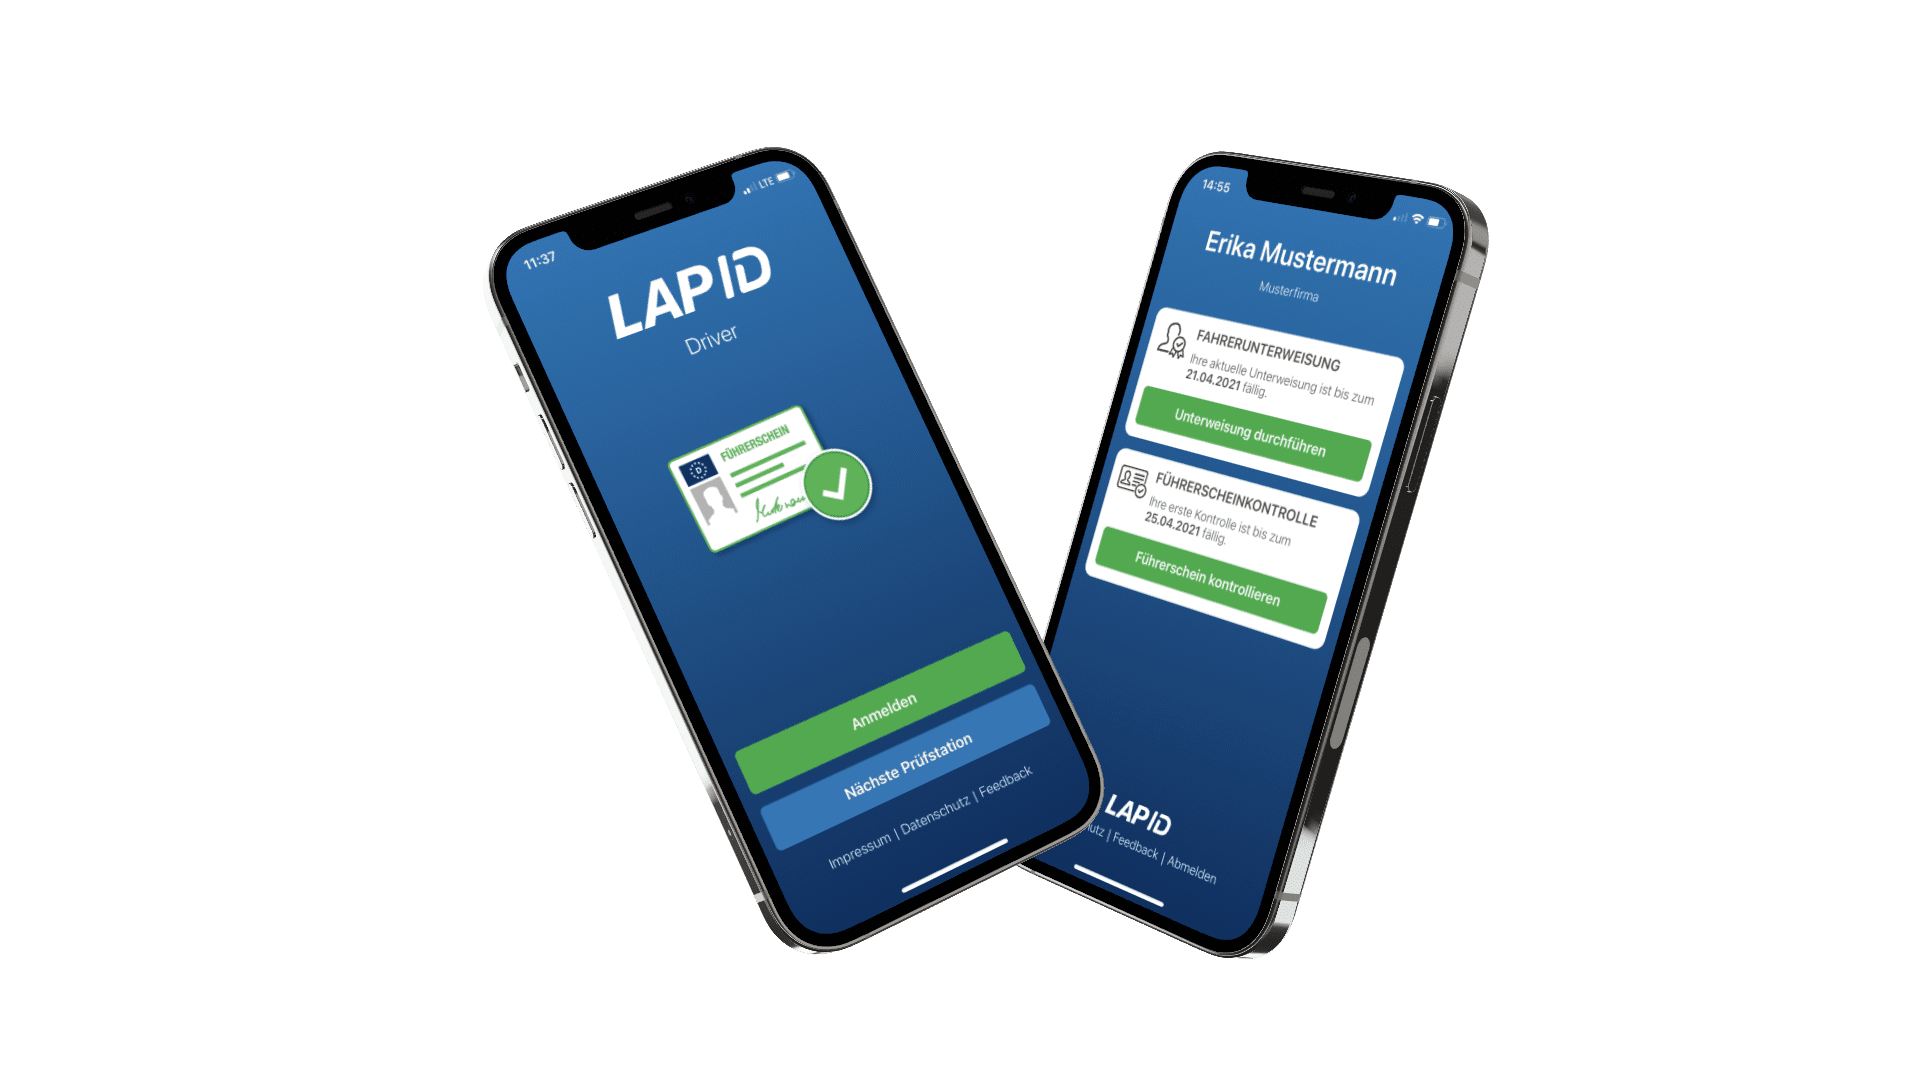 iPhone mit LapID Driver App